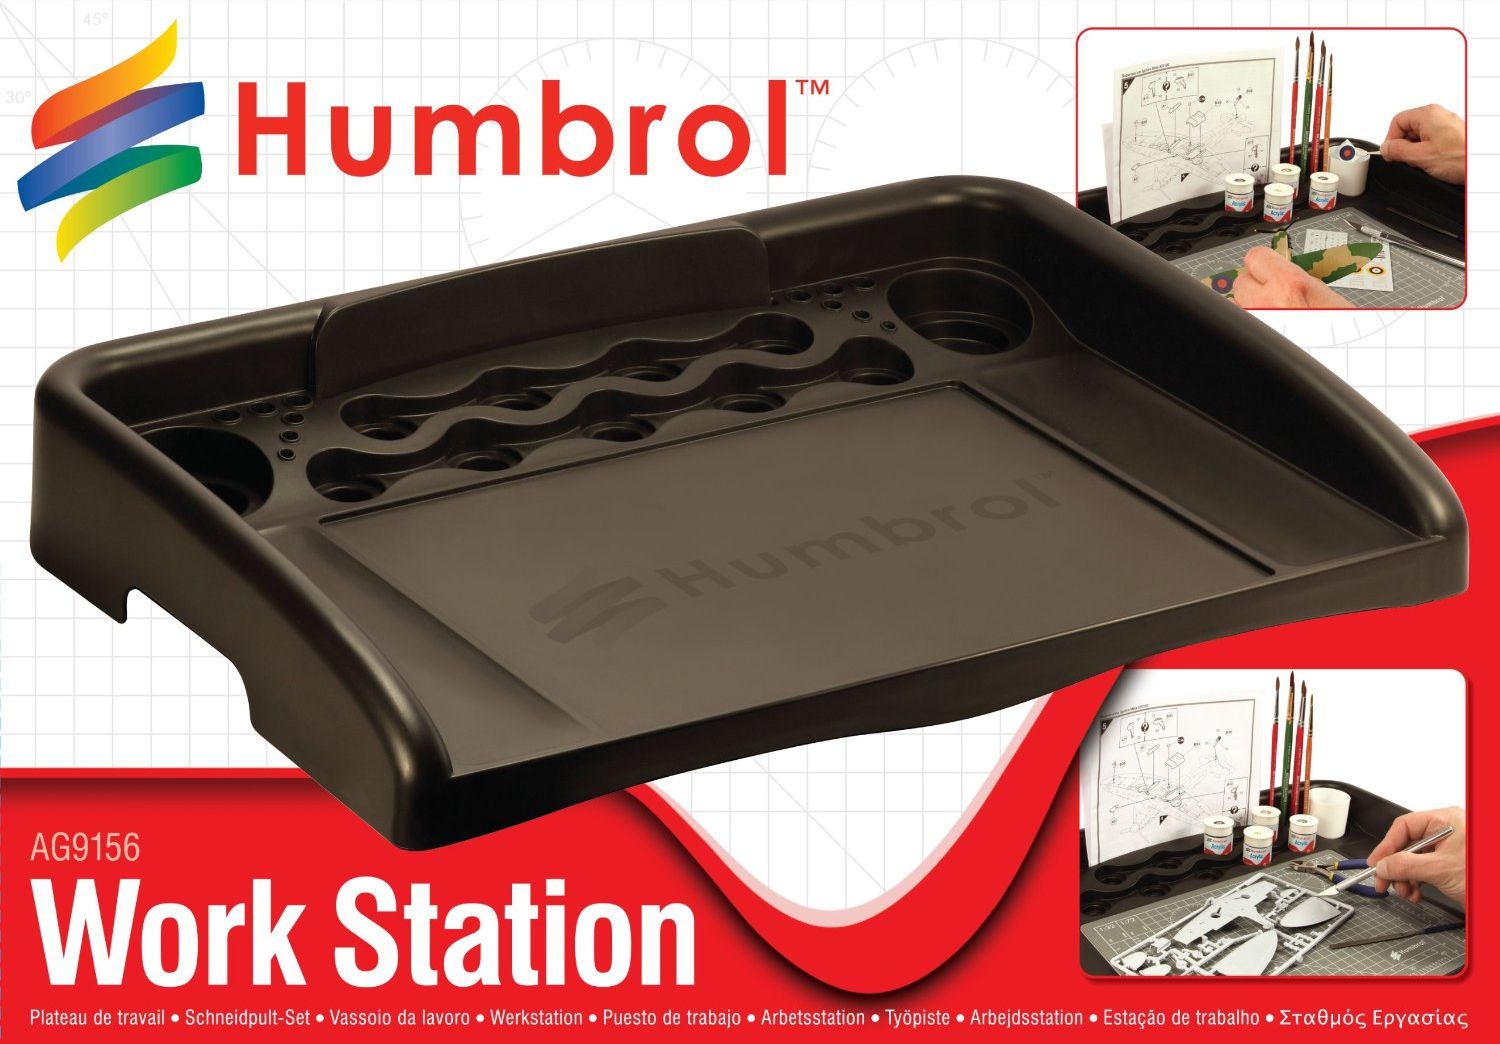 Humbrol Work Station - pracovní stanice - obrázek 1